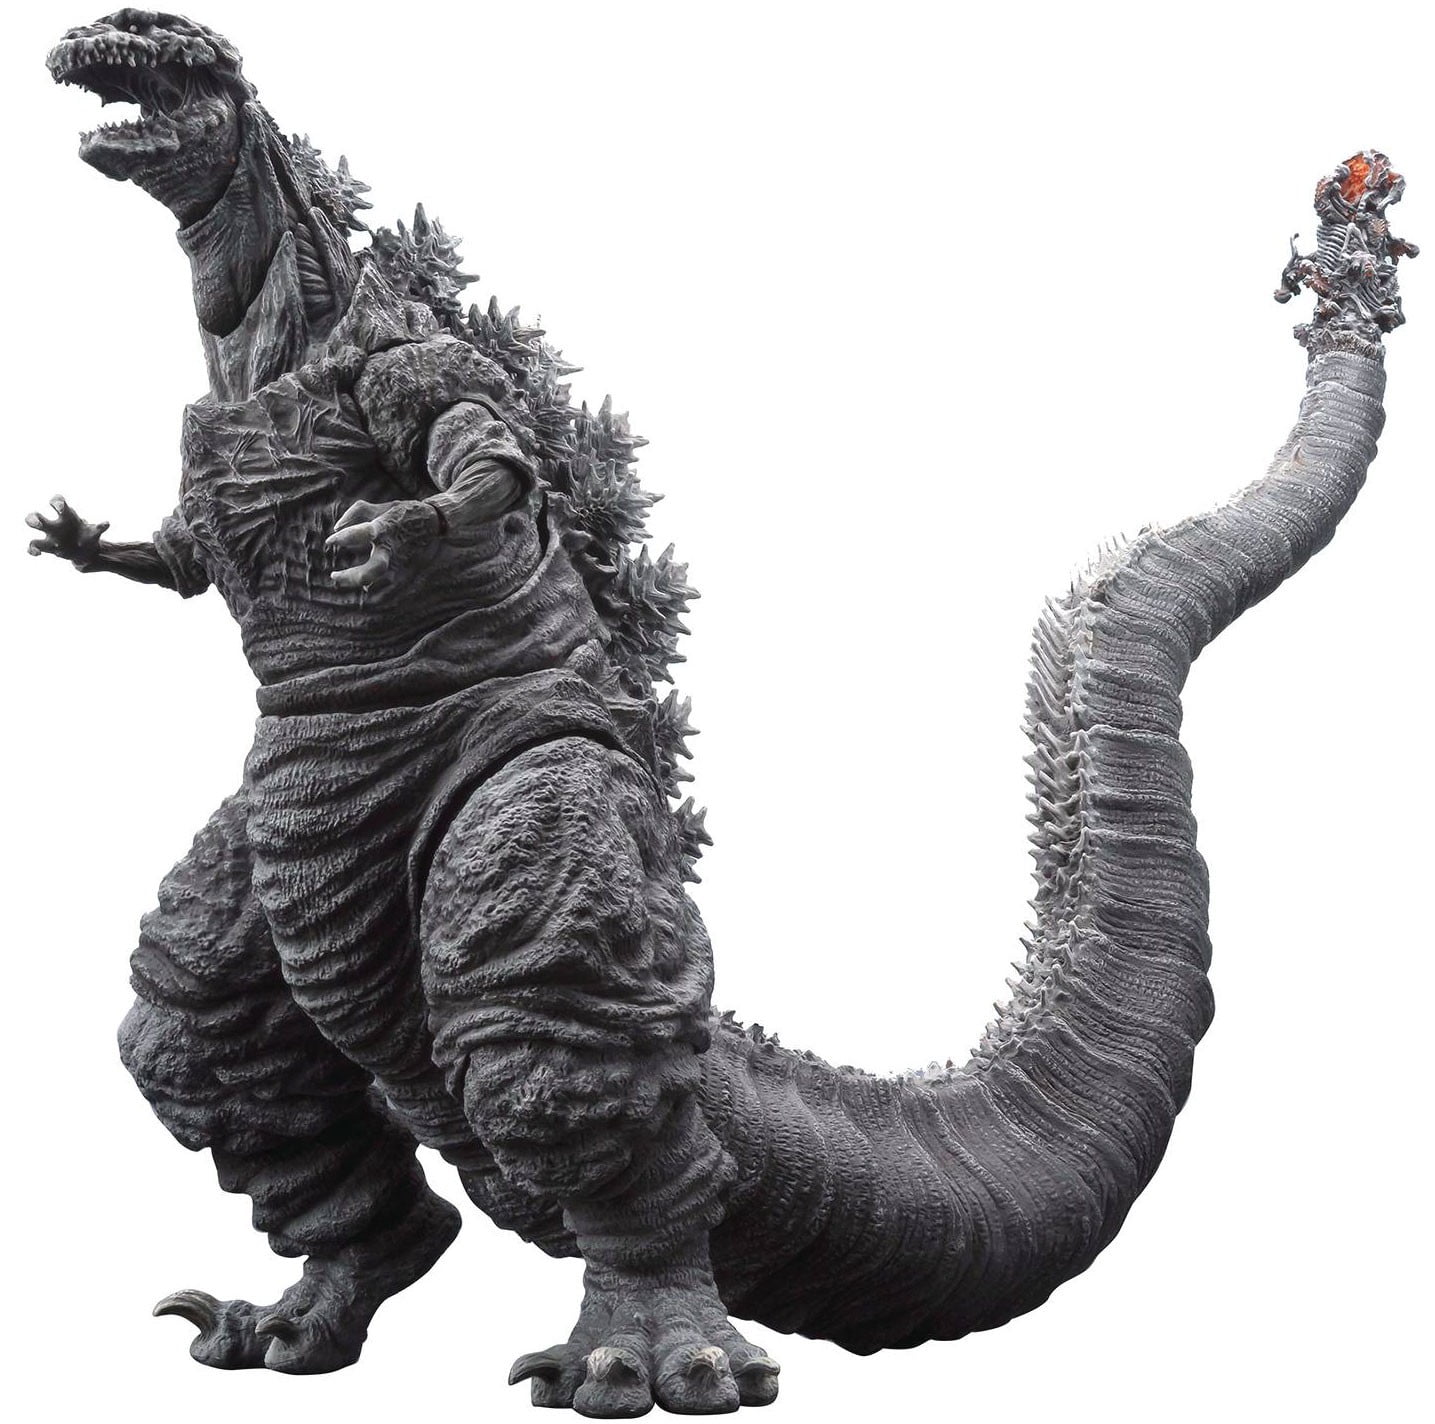 BANDAI HG series Shin Godzilla 2 All 4 types Gashapon Figure 